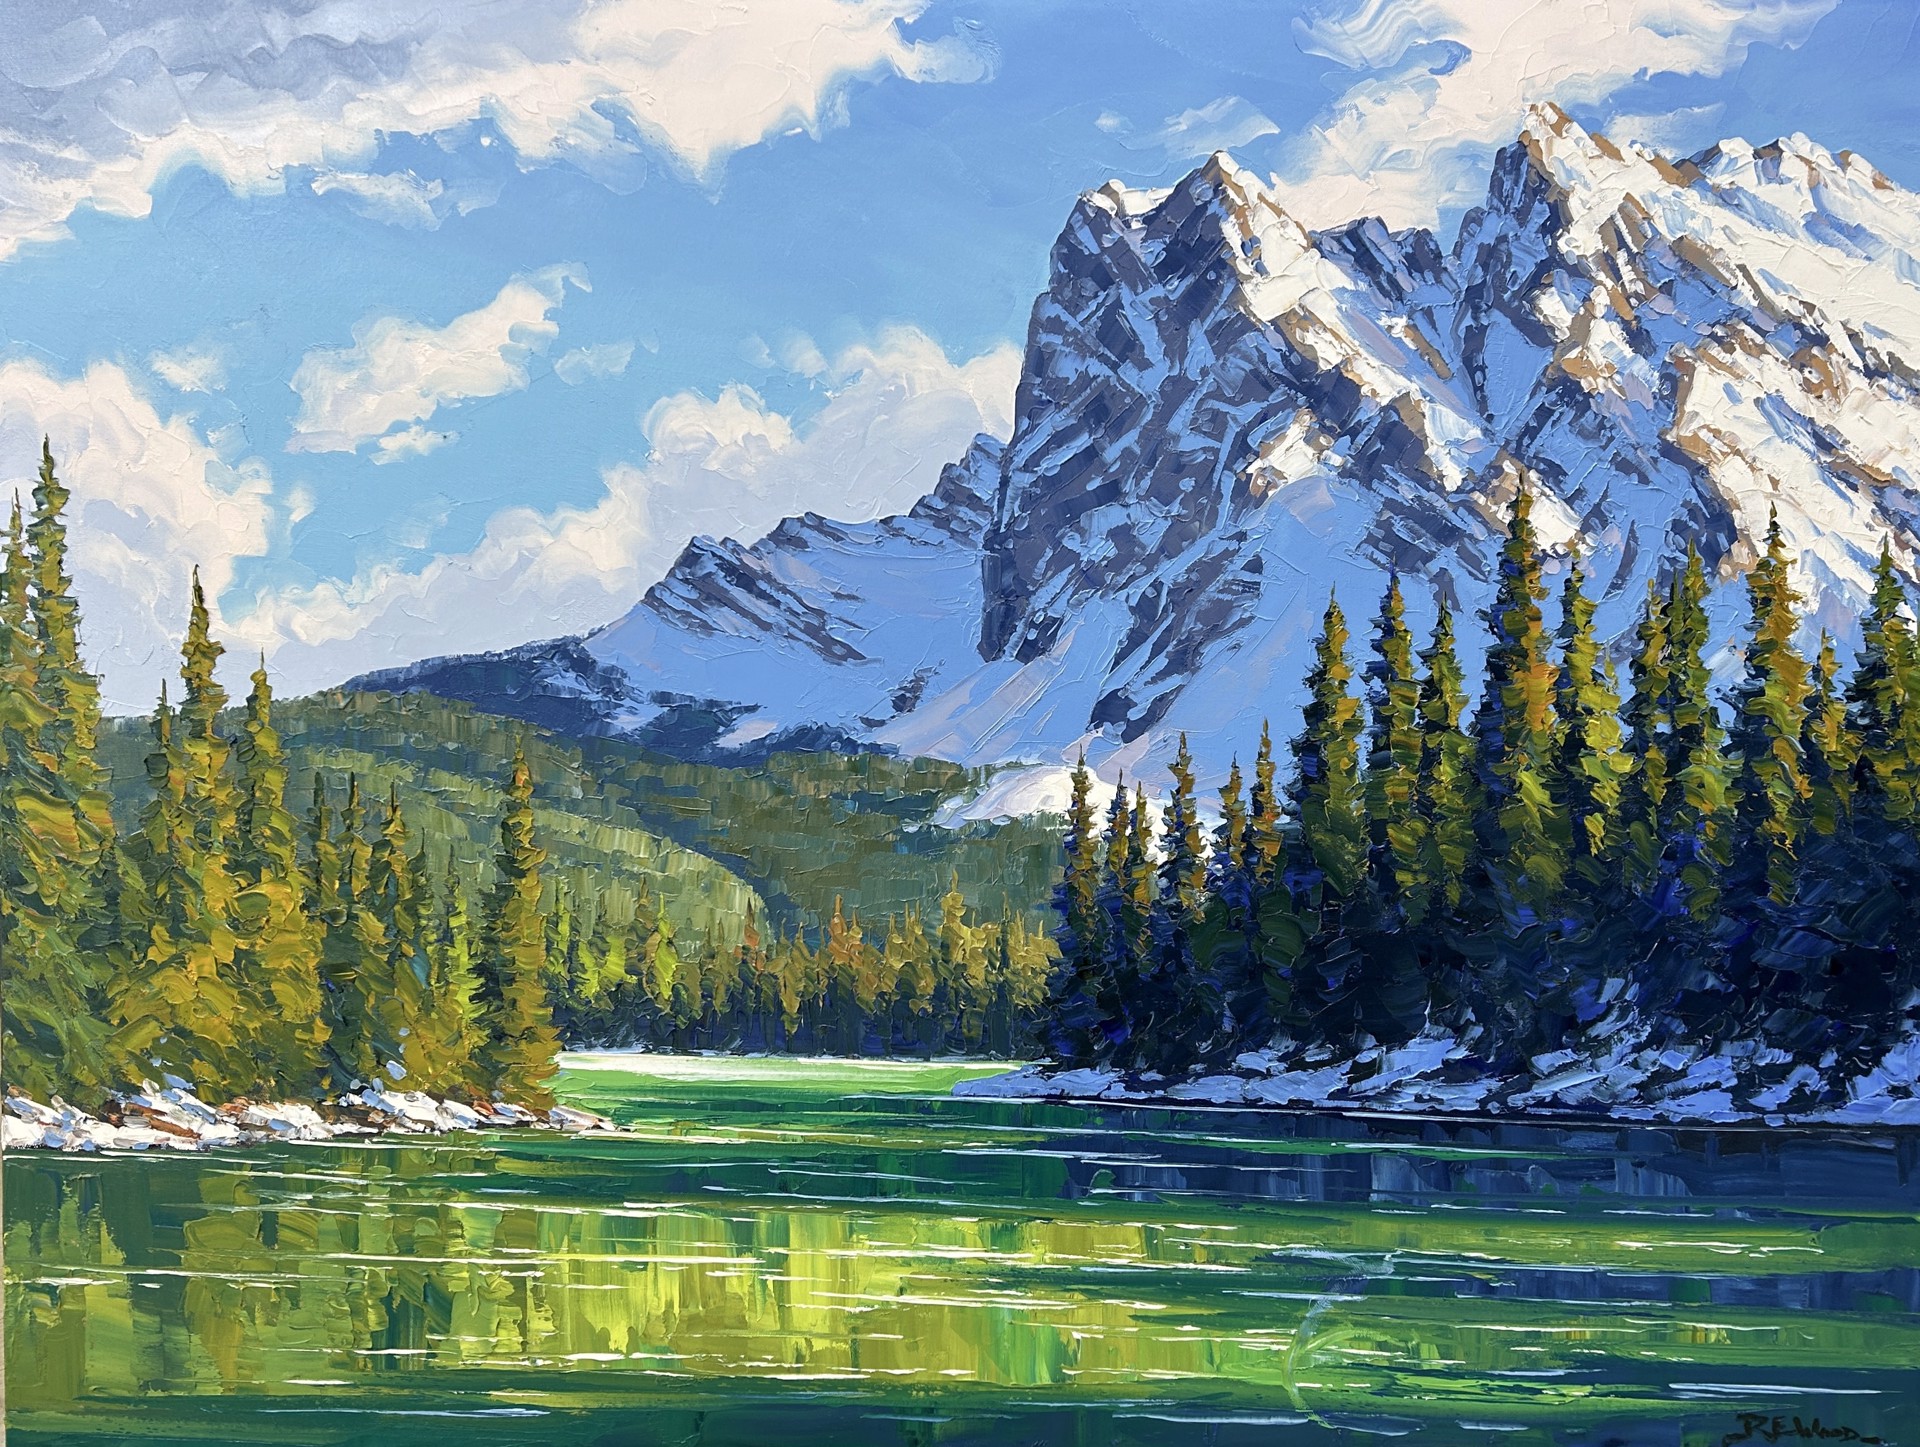 Mount Burgess & Emerald Lake by Robert E Wood